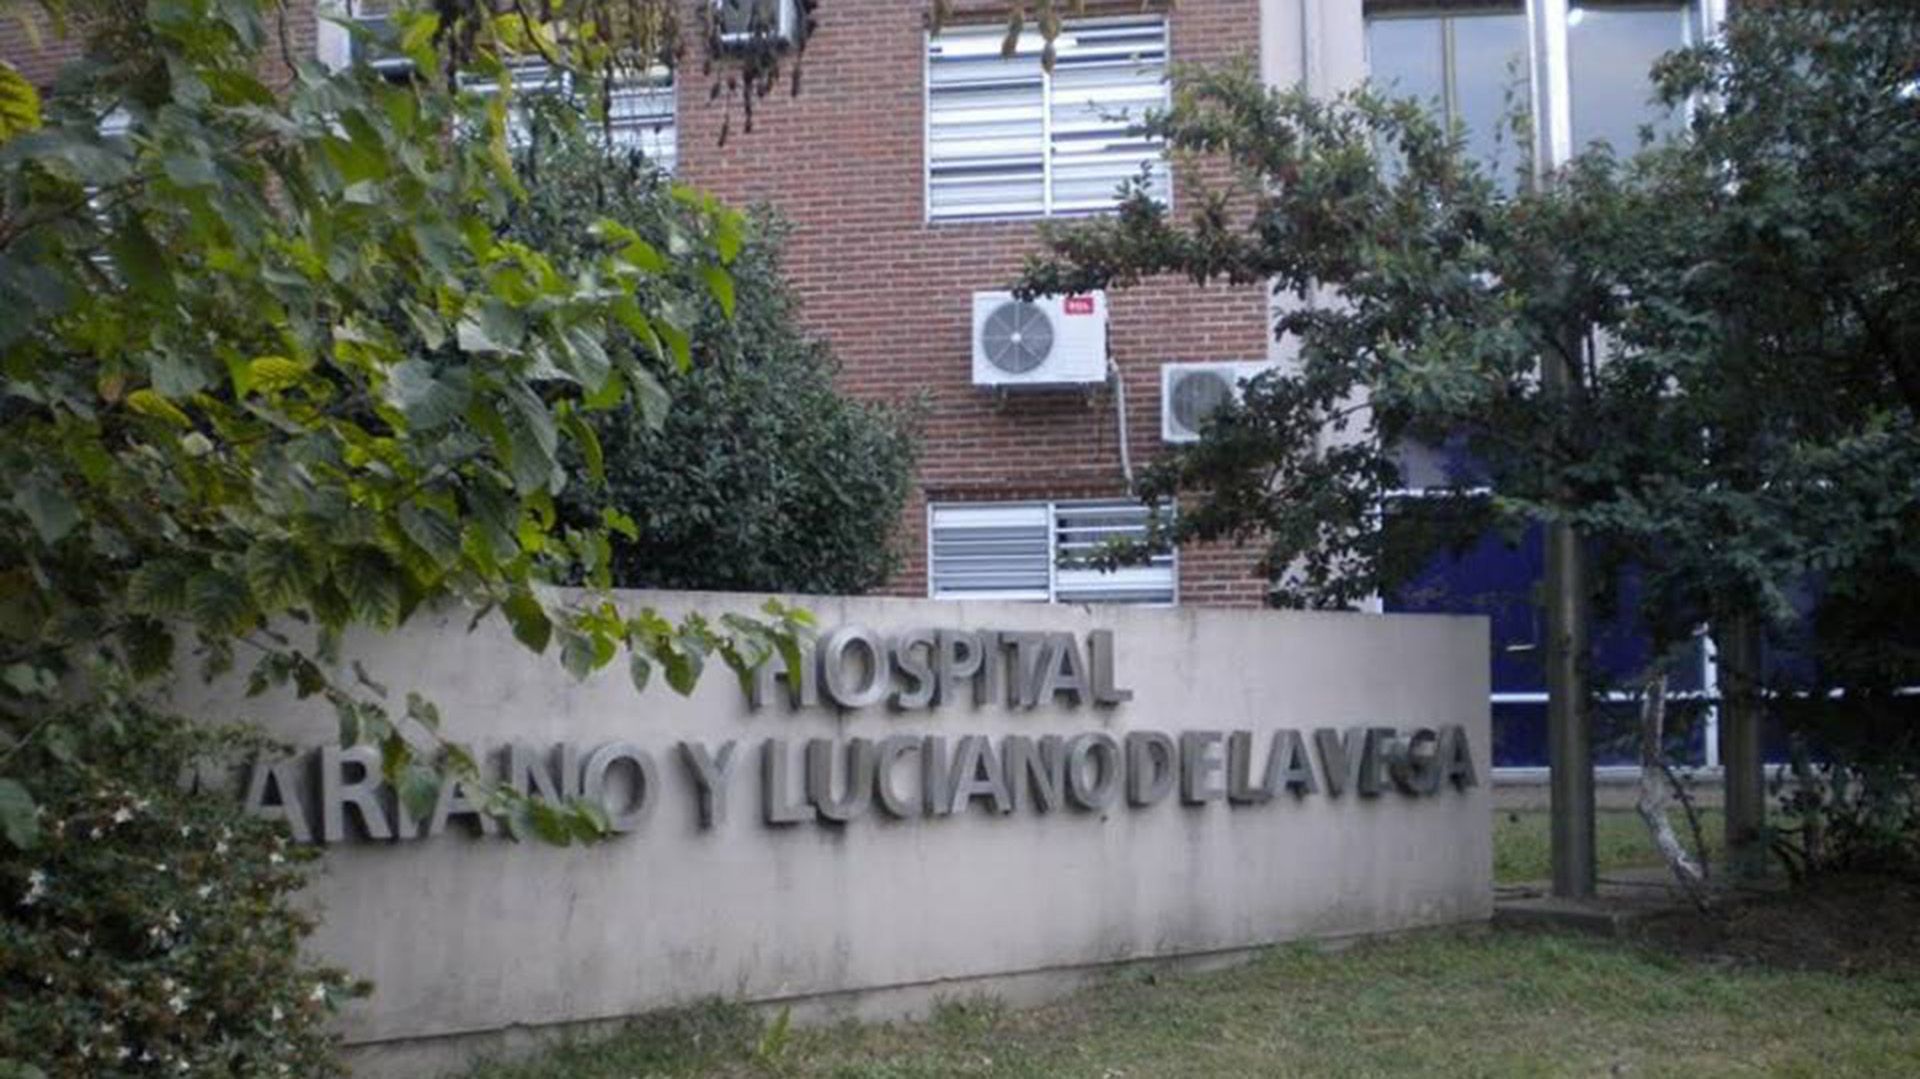 La historia de Mariano y Luciano De la Vega, los hermanos que le dieron el nombre al Hospital de Moreno